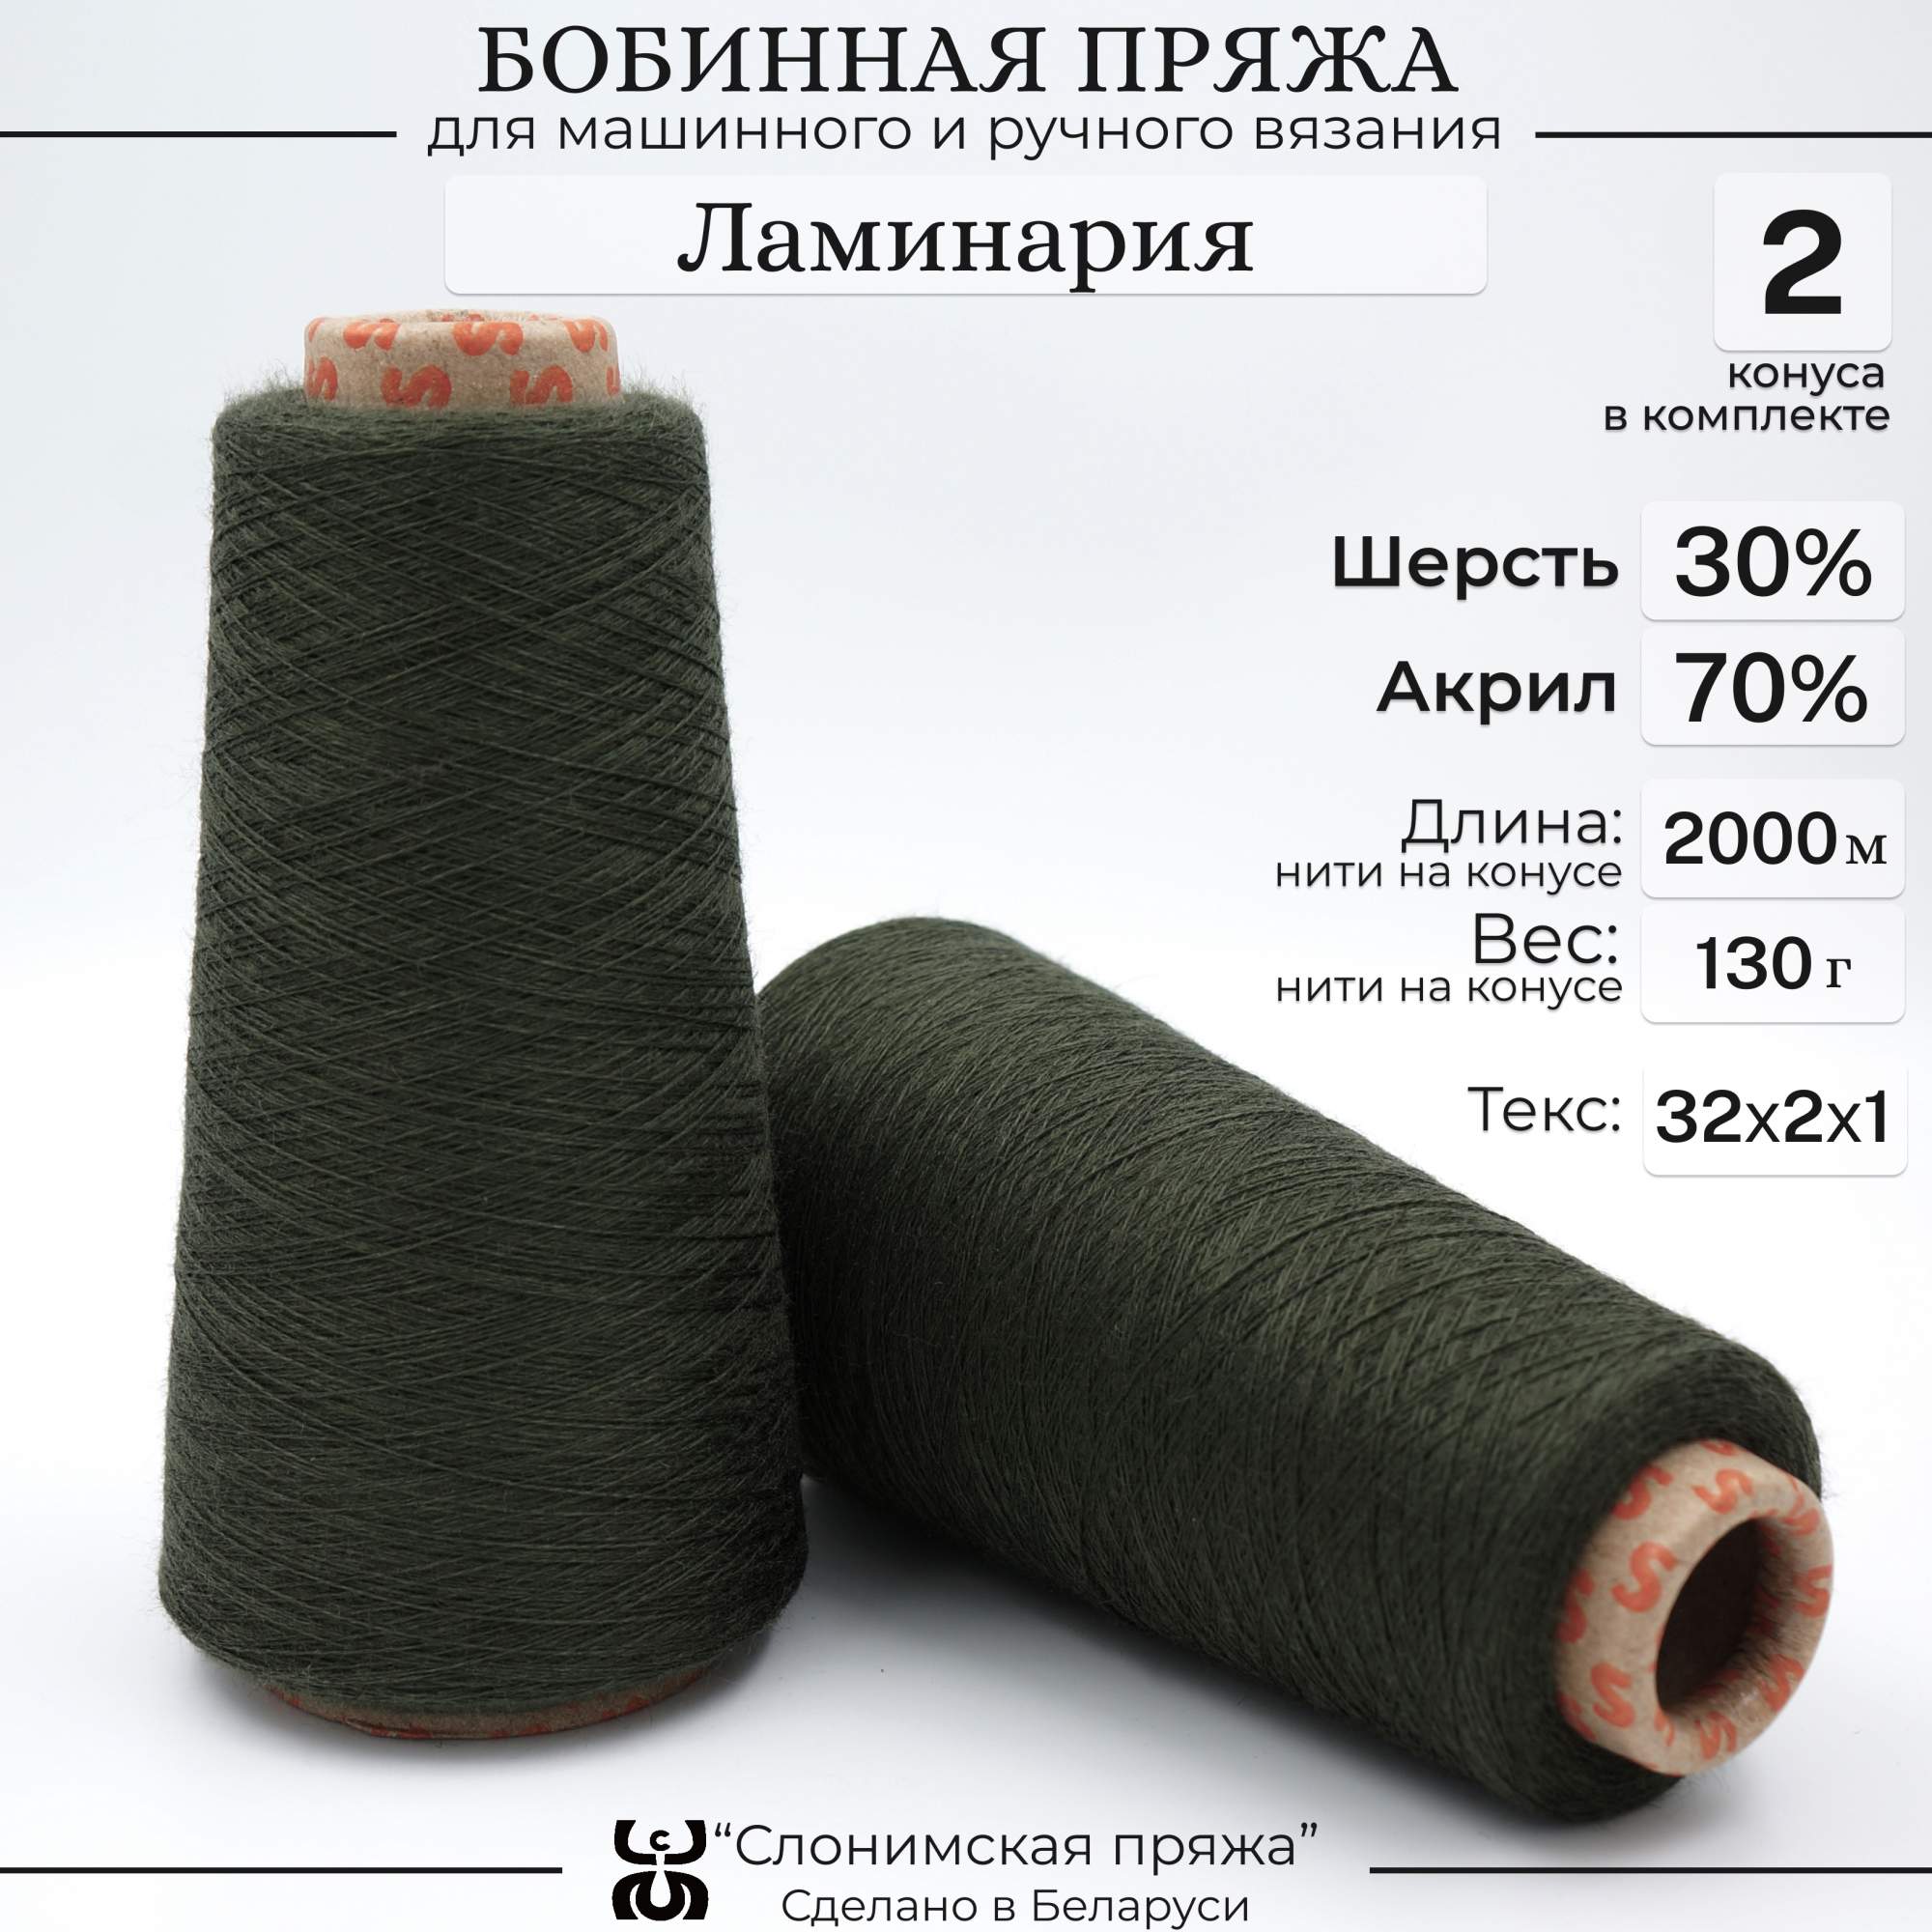 Бобинная пряжа для вязания Слонимская пряжа 30% шерсть 70% акрил ламинария